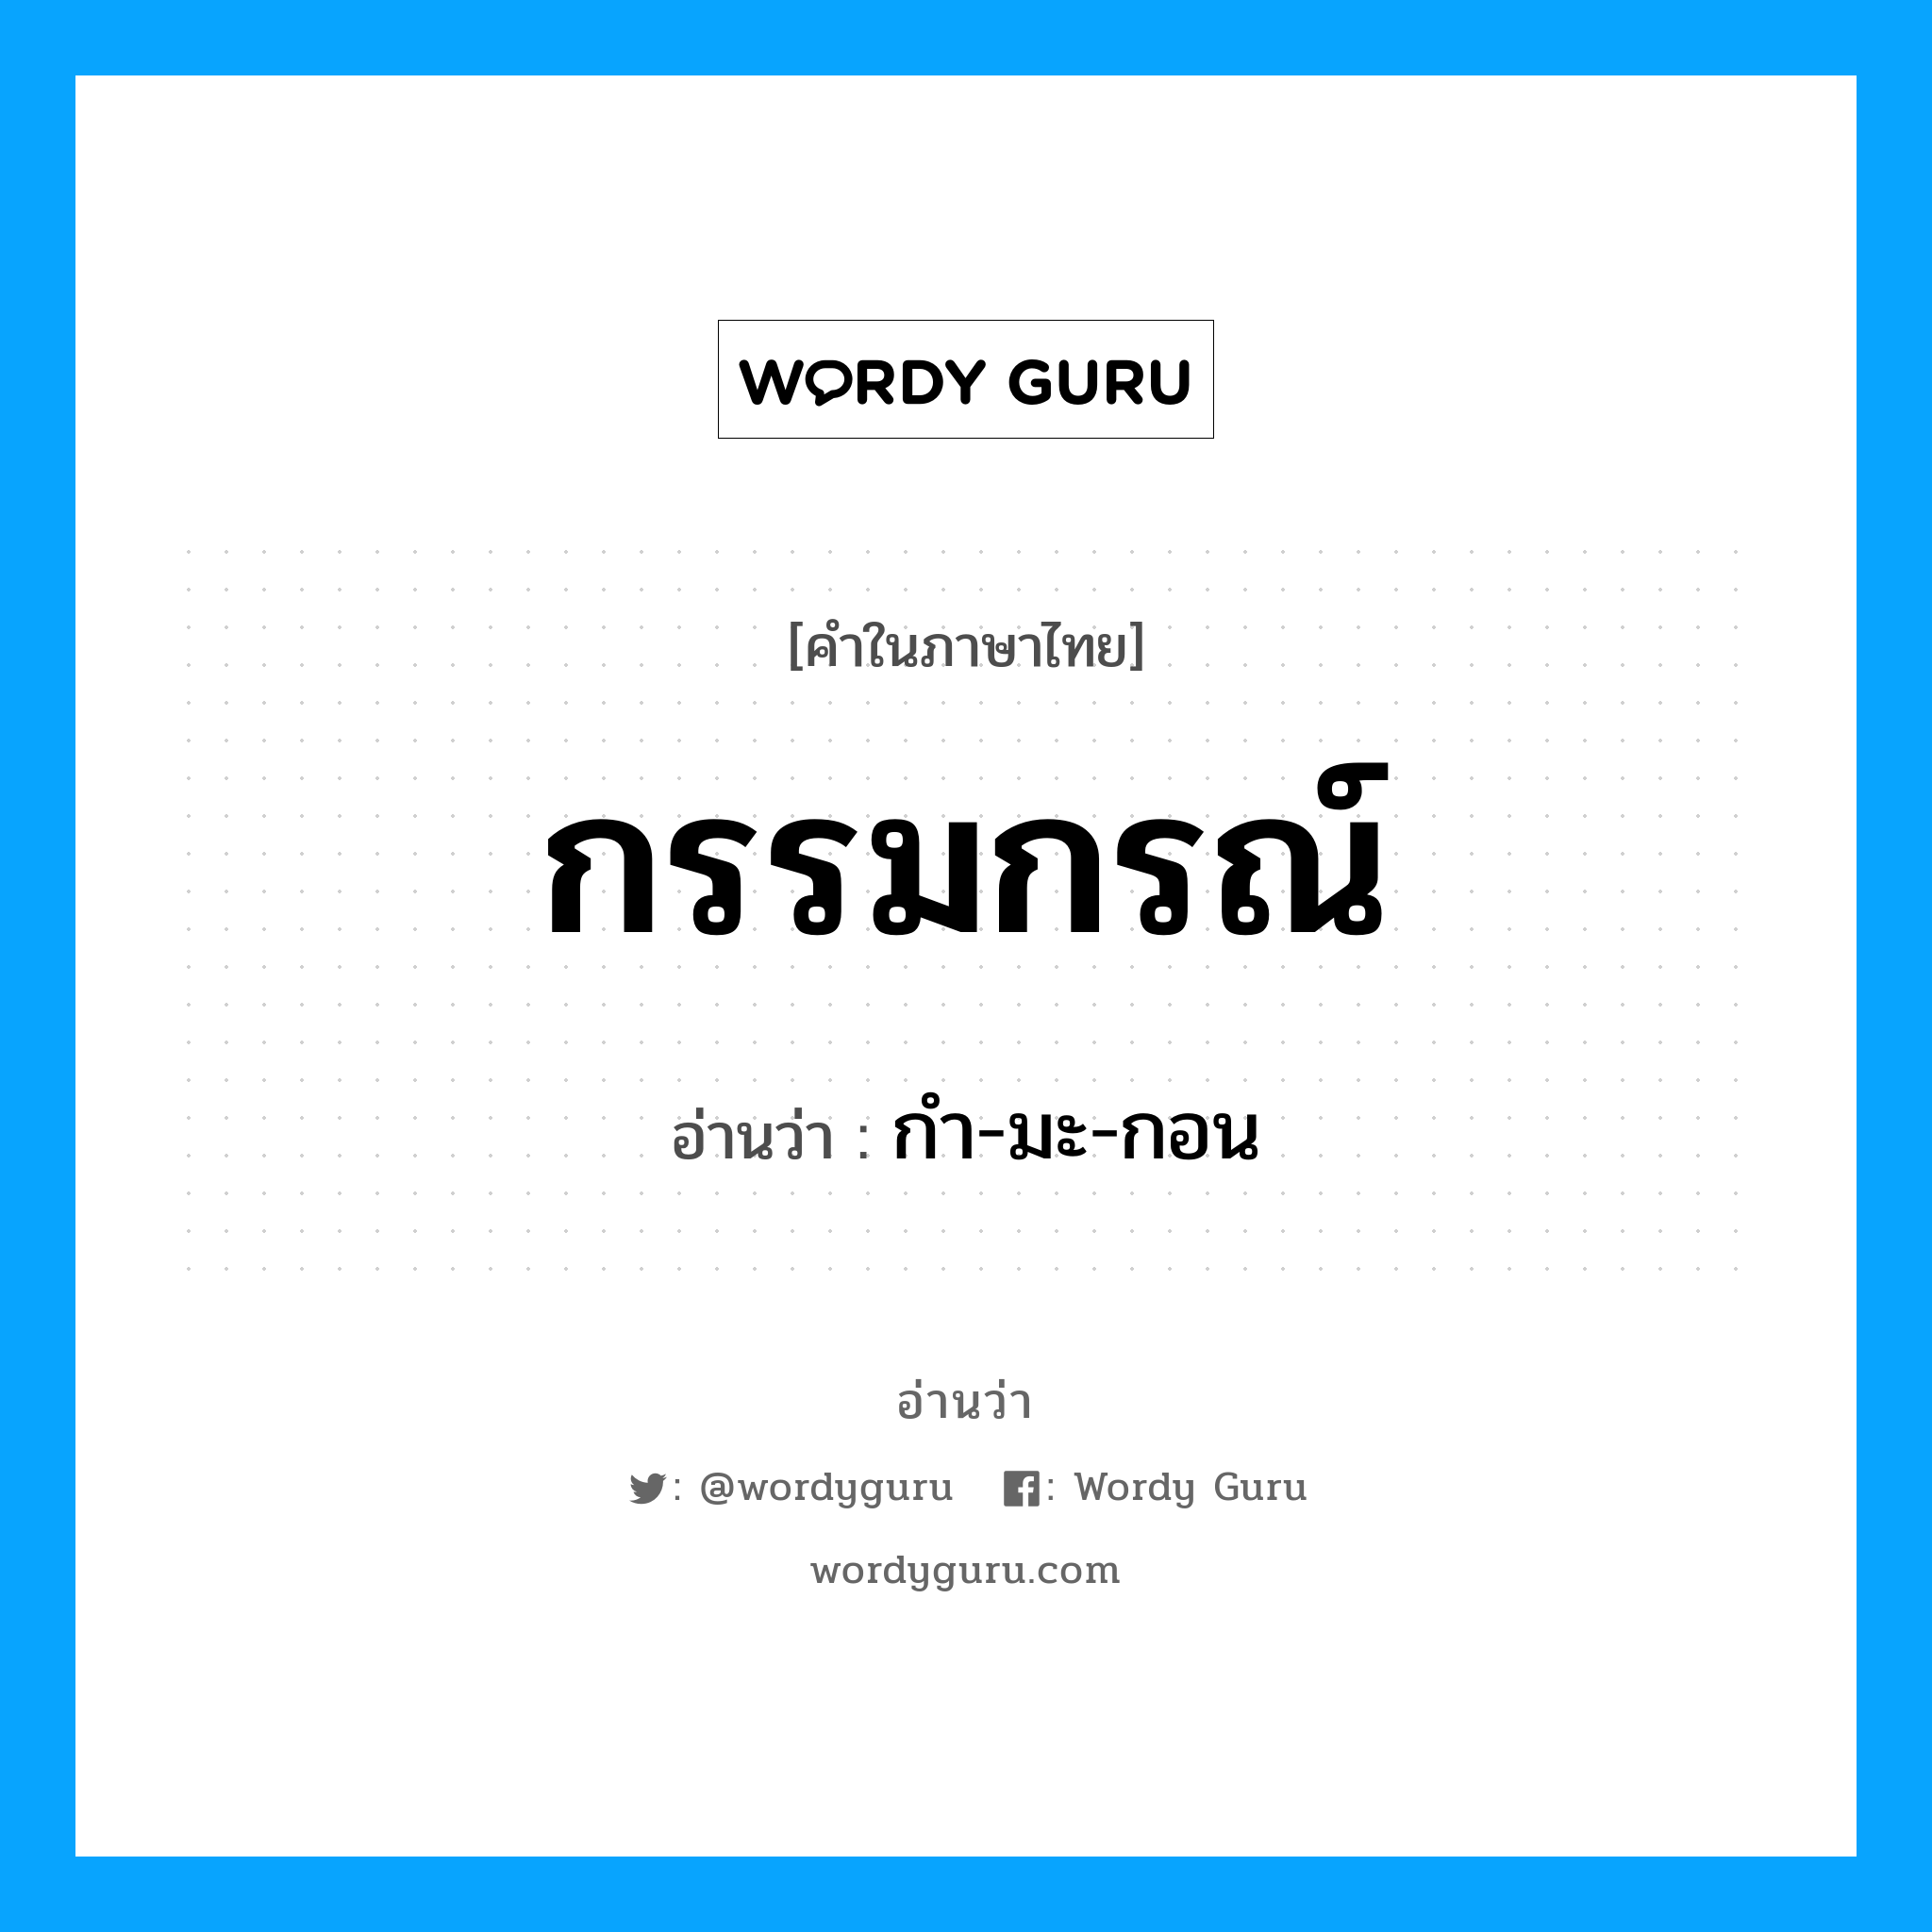 กำ-มะ-กอน เป็นคำอ่านของคำไหน?, คำในภาษาไทย กำ-มะ-กอน อ่านว่า กรรมกรณ์